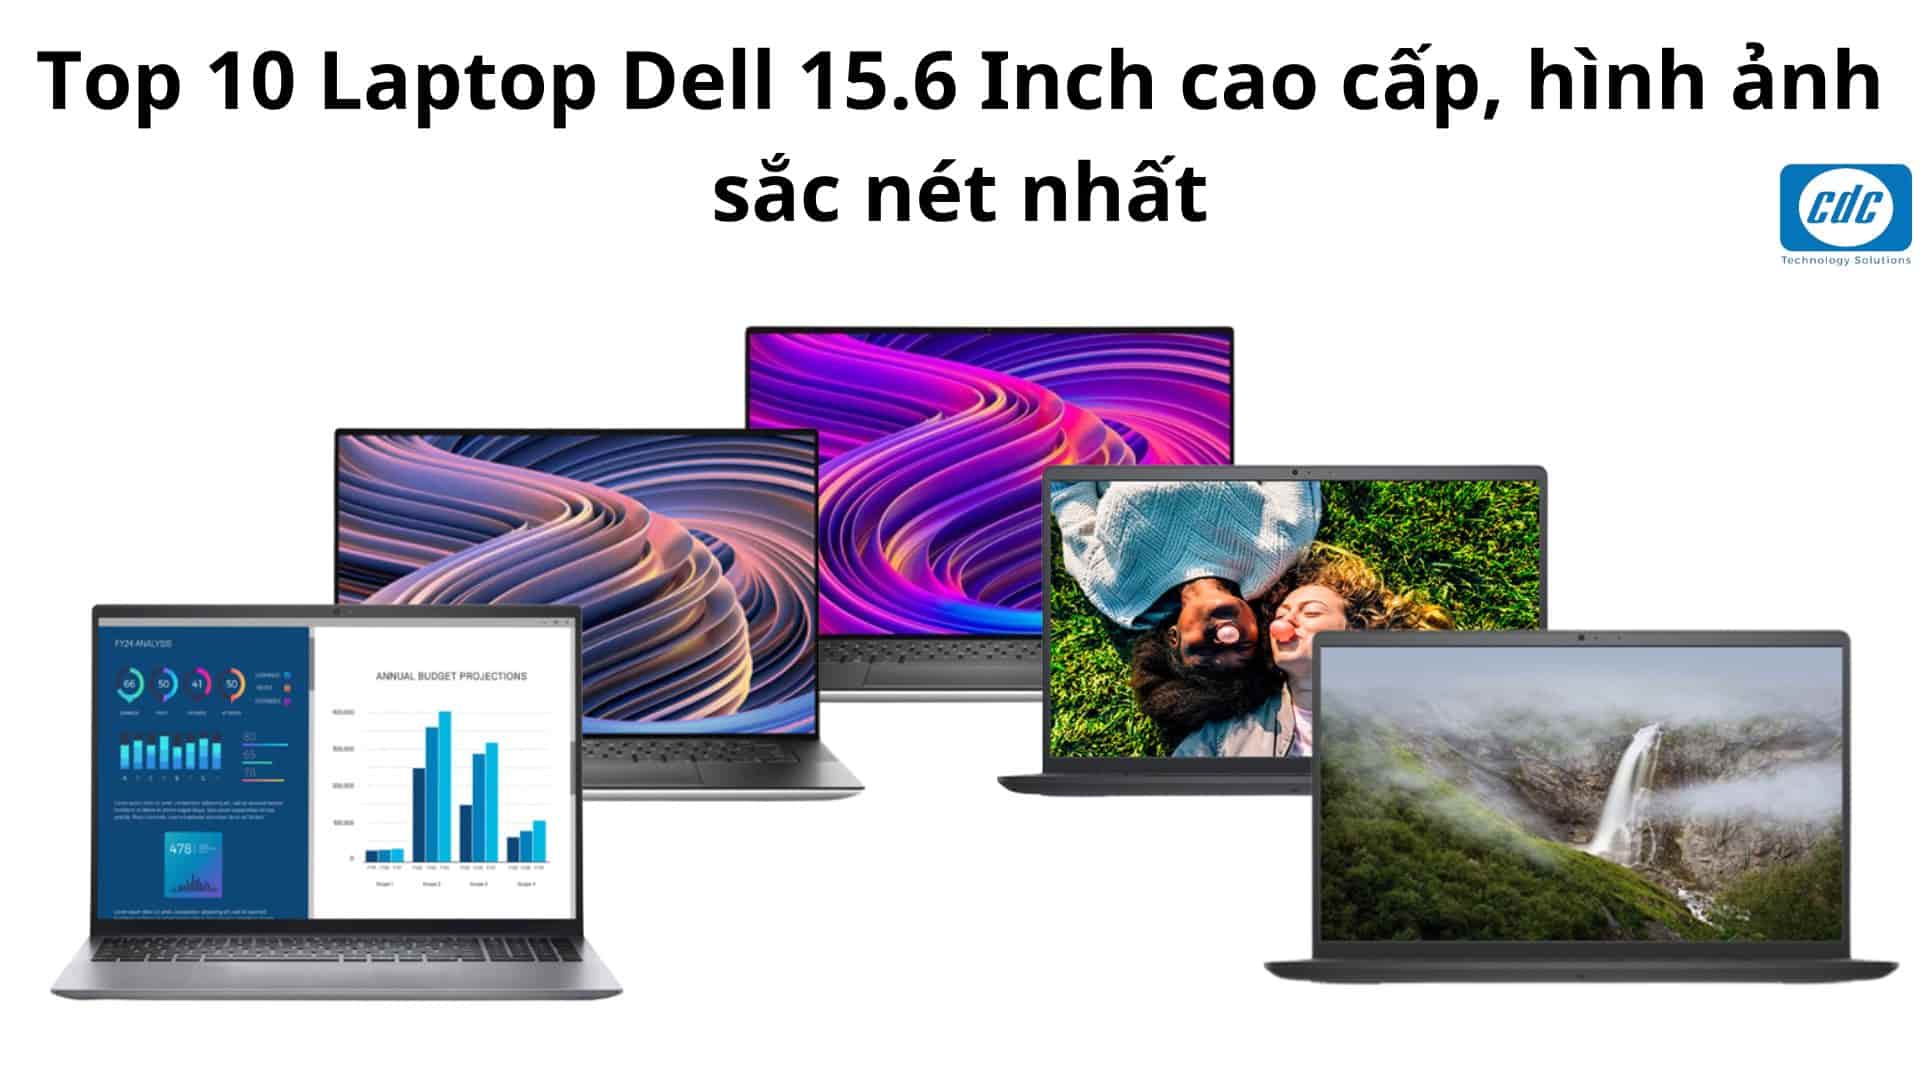 Top 10 Laptop Dell 15.6 Inch cao cấp, hình ảnh sắc nét nhất